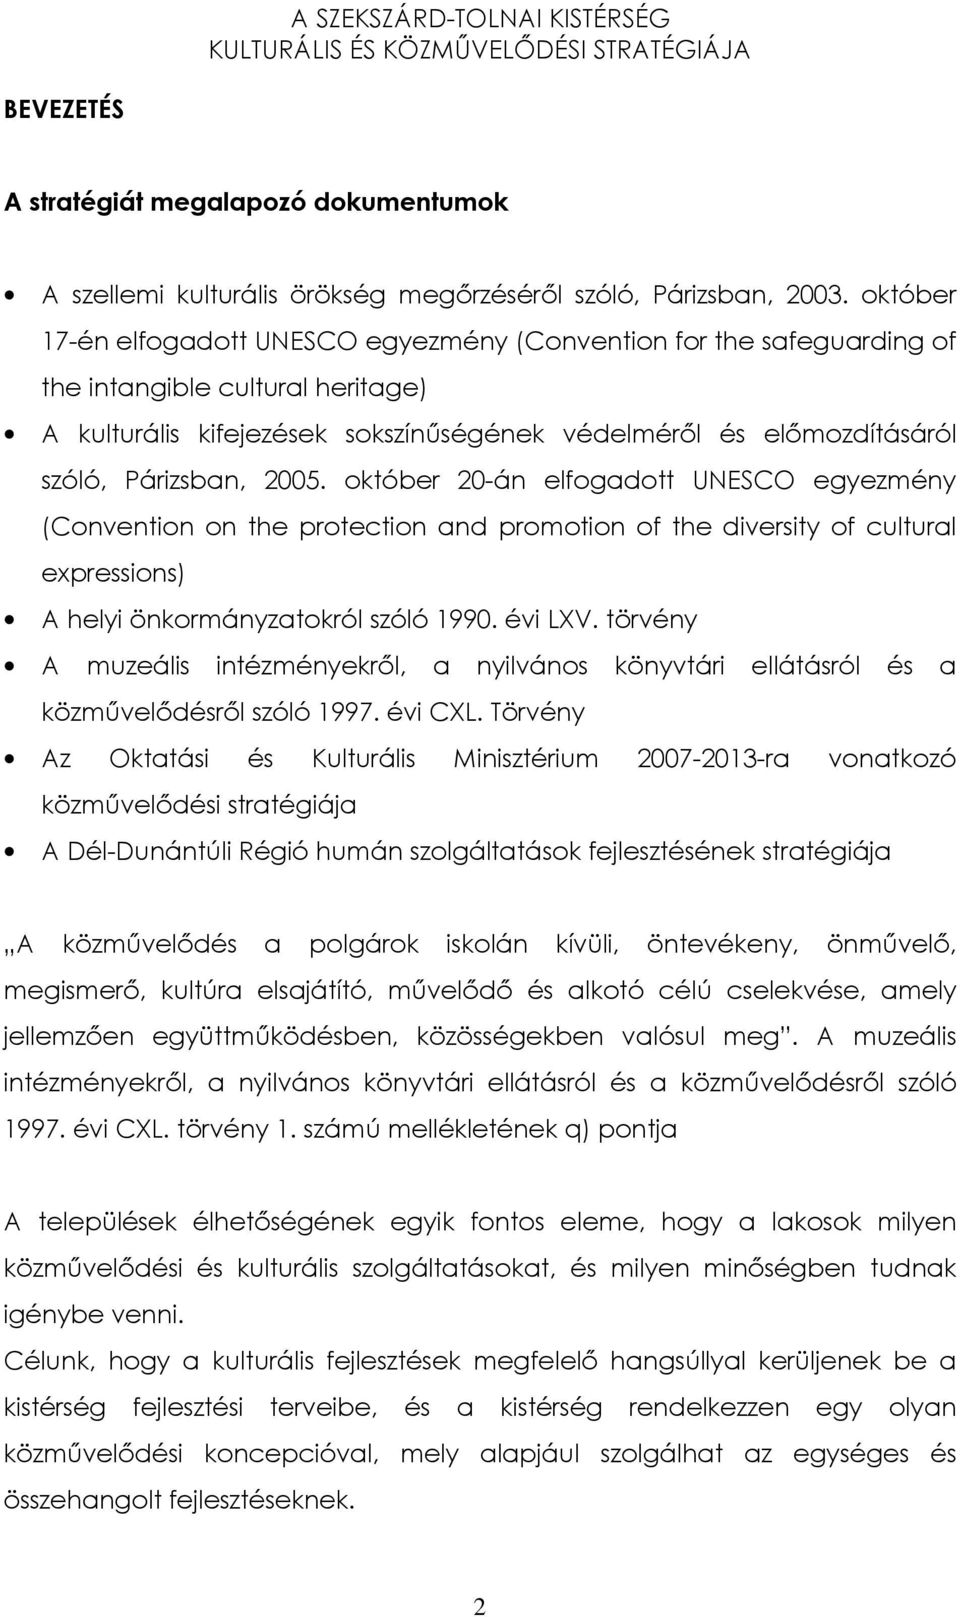 Párizsban, 2005. október 20-án elfogadott UNESCO egyezmény (Convention on the protection and promotion of the diversity of cultural expressions) A helyi önkormányzatokról szóló 1990. évi LXV.